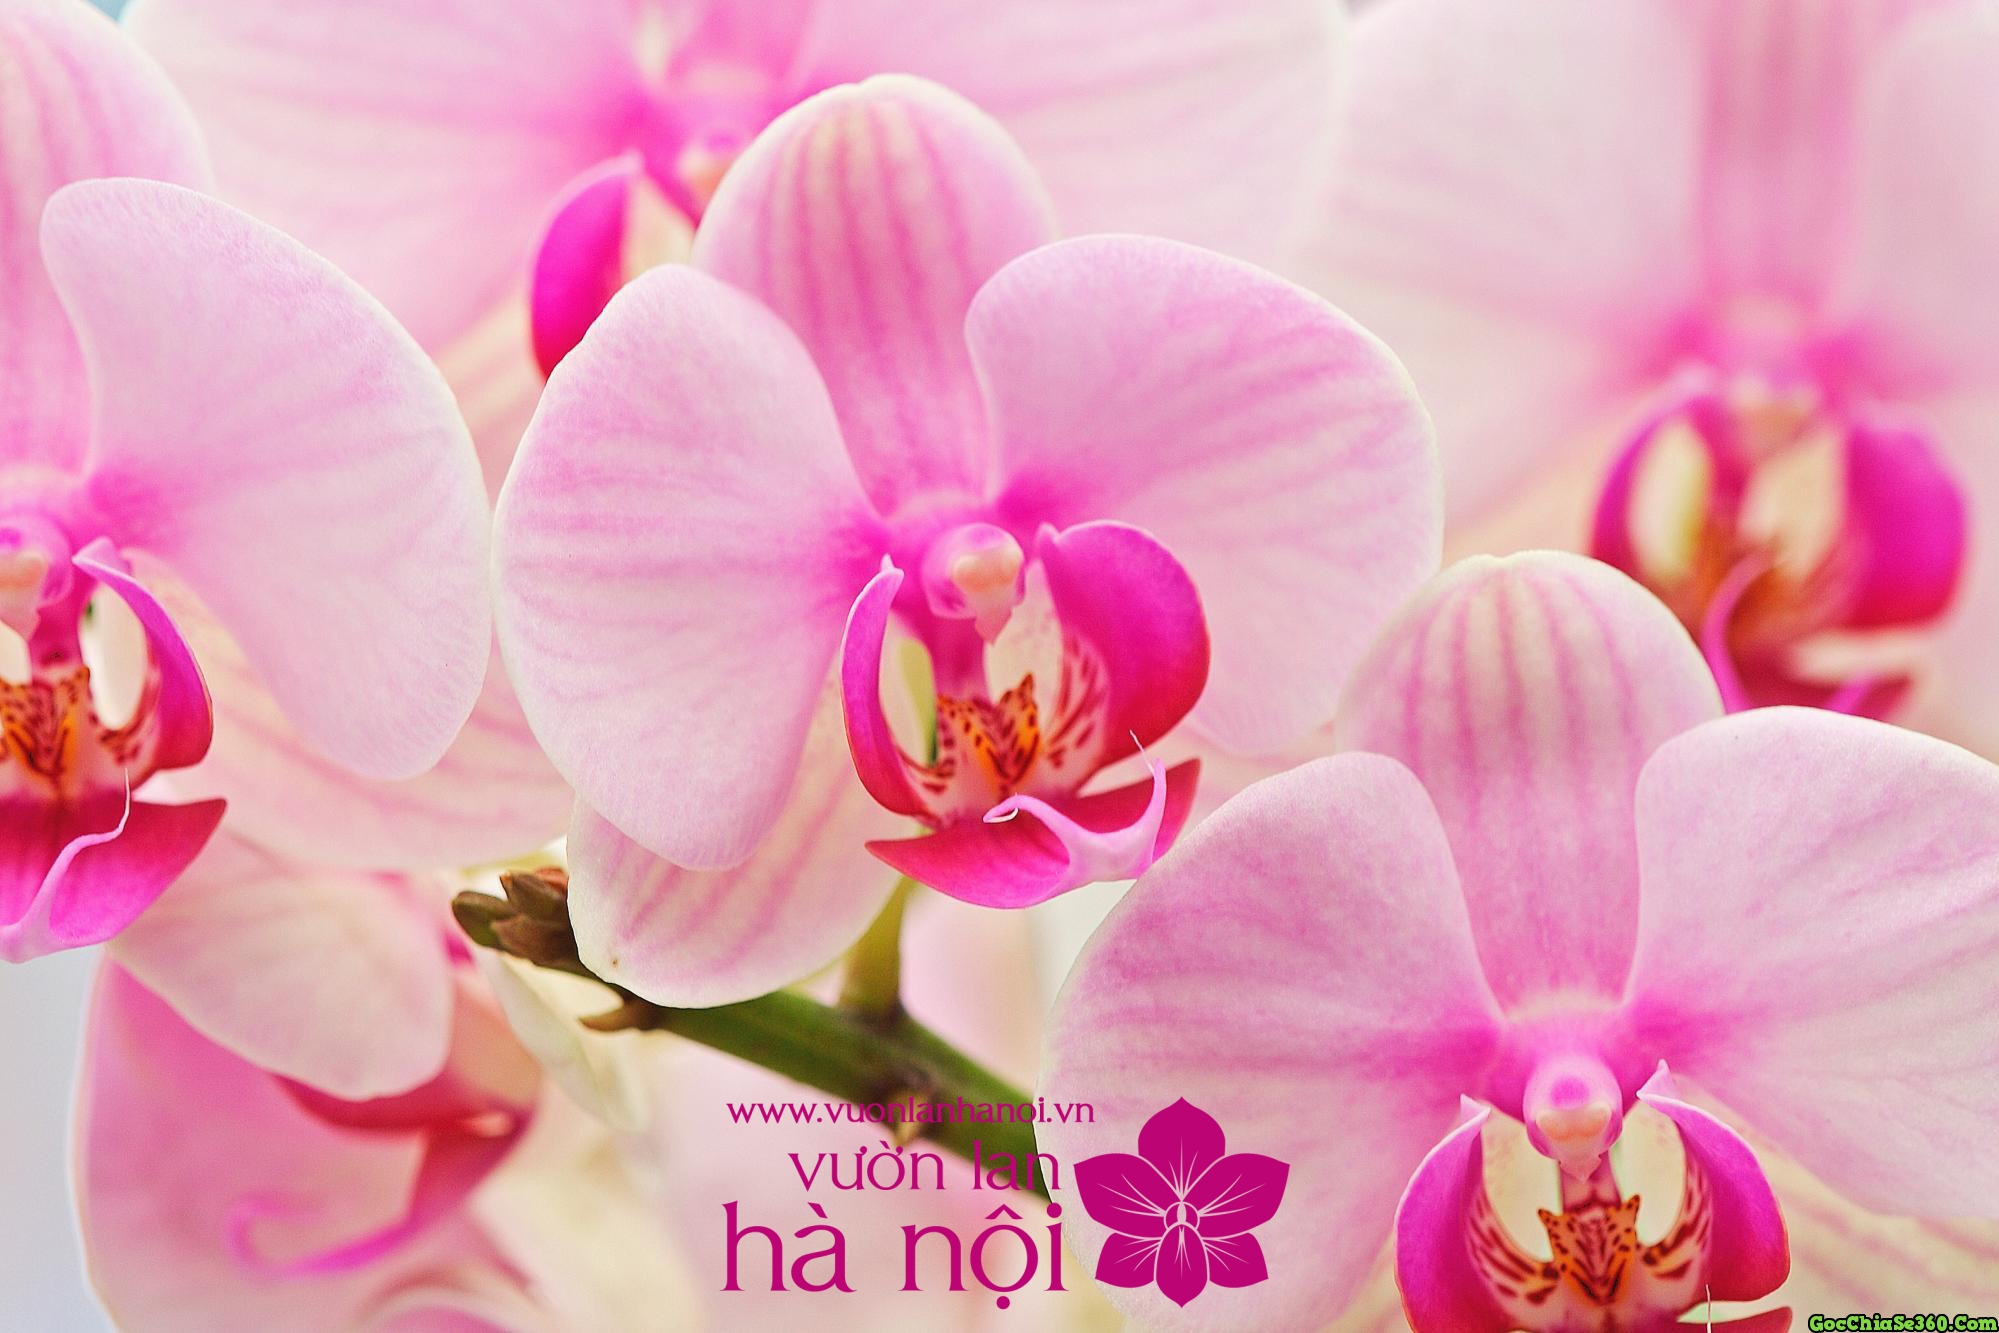 Hoa lan hồ điệp là loài hoa rất đẹp và sang trọng, có màu sắc phong phú và hương thơm ngát. Hãy xem hình ảnh liên quan để chiêm ngưỡng vẻ đẹp của loài hoa này và tạo cảm hứng cho ngày mới của bạn.